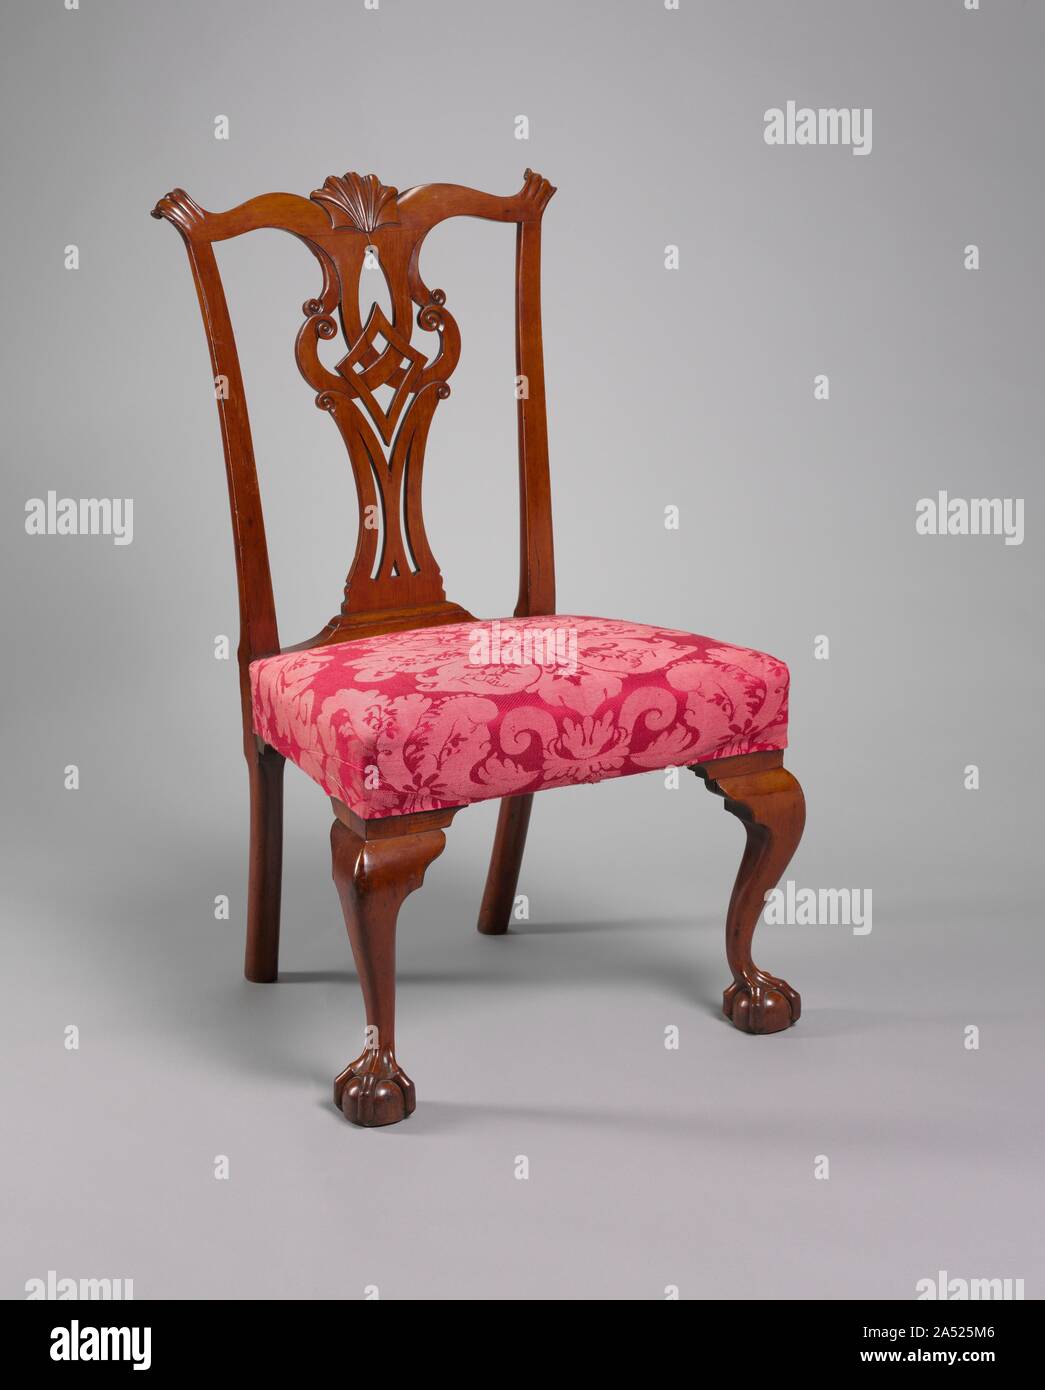 Side Chair, C. 1775. Bevor er zu einem der bekanntesten Connecticut Möbelhersteller der späten 1700s, Eliphalet Chapin arbeitete in New York und Philadelphia. Seine Möbel Anzeichen von dieser Erfahrung. Zum Beispiel die Rückseite dieser Stuhl hat ein splat Design auf New York Stücke gefunden, während die Verjüngter hinteren Beine und die shell Carven auf der Kammschiene typisch für Philadelphia Verarbeitung sind. Die Verwendung von Kirsche, jedoch ist charakteristisch für Connecticut Möbel. Dieser Stuhl kommt von einem Satz in Chapin auf das Konto buchen Sie als zu Ebenezer Grant geliefert worden Teil von T-Form Stockfoto